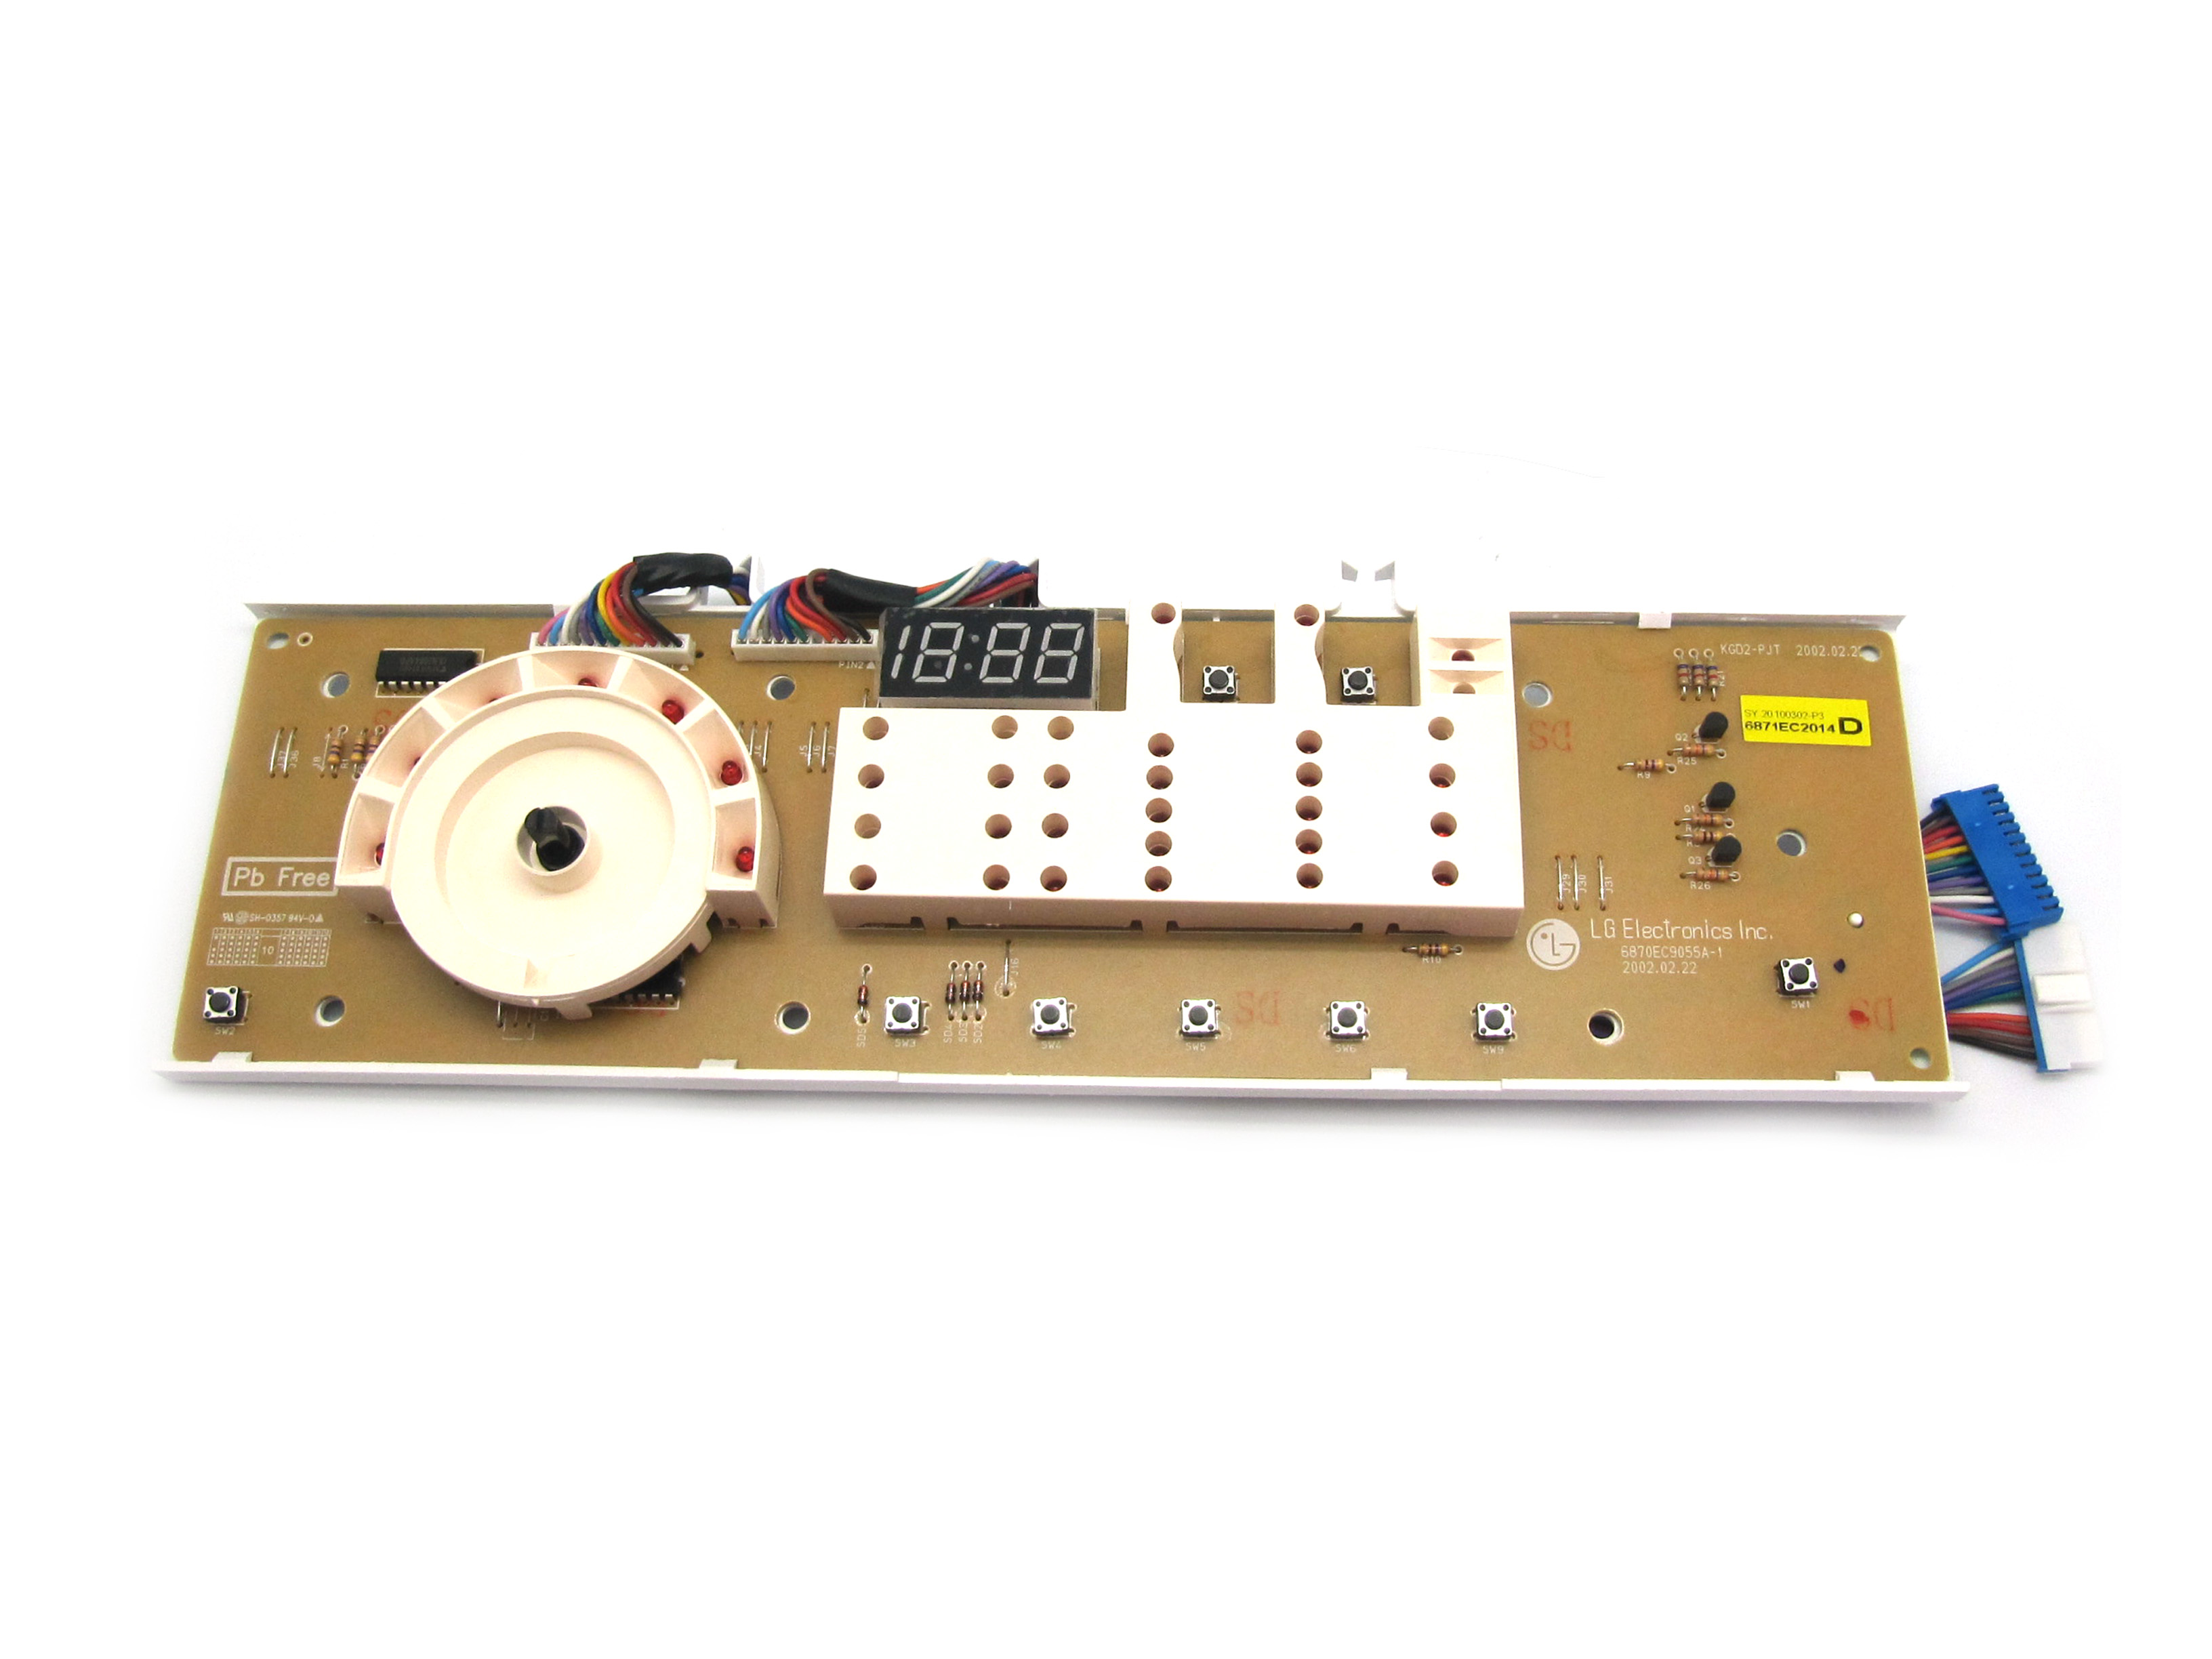 Circuito electronico con displ - 68LG0115 - *